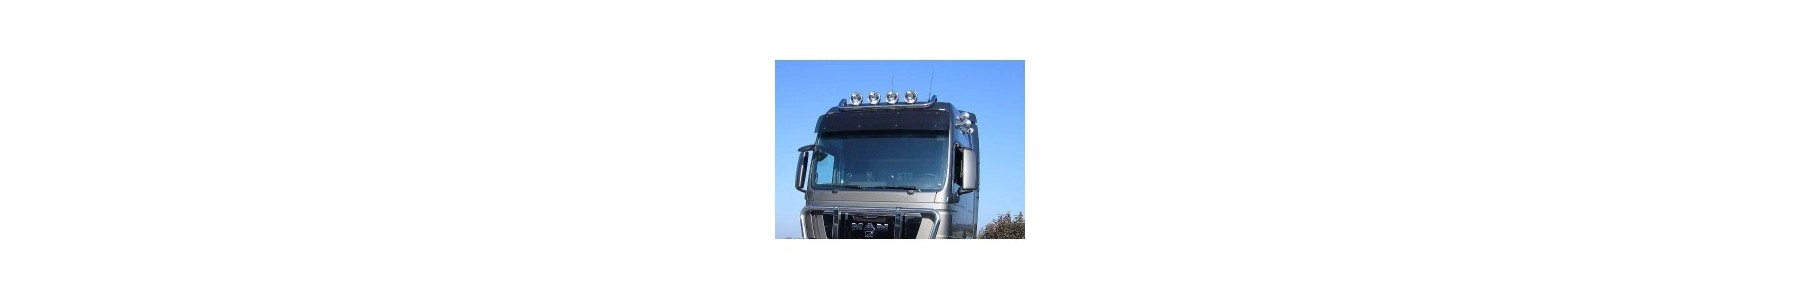 Rampe de toit pour votre camion MAN TGX 22H22 Vente accessoires tuning poids lourd